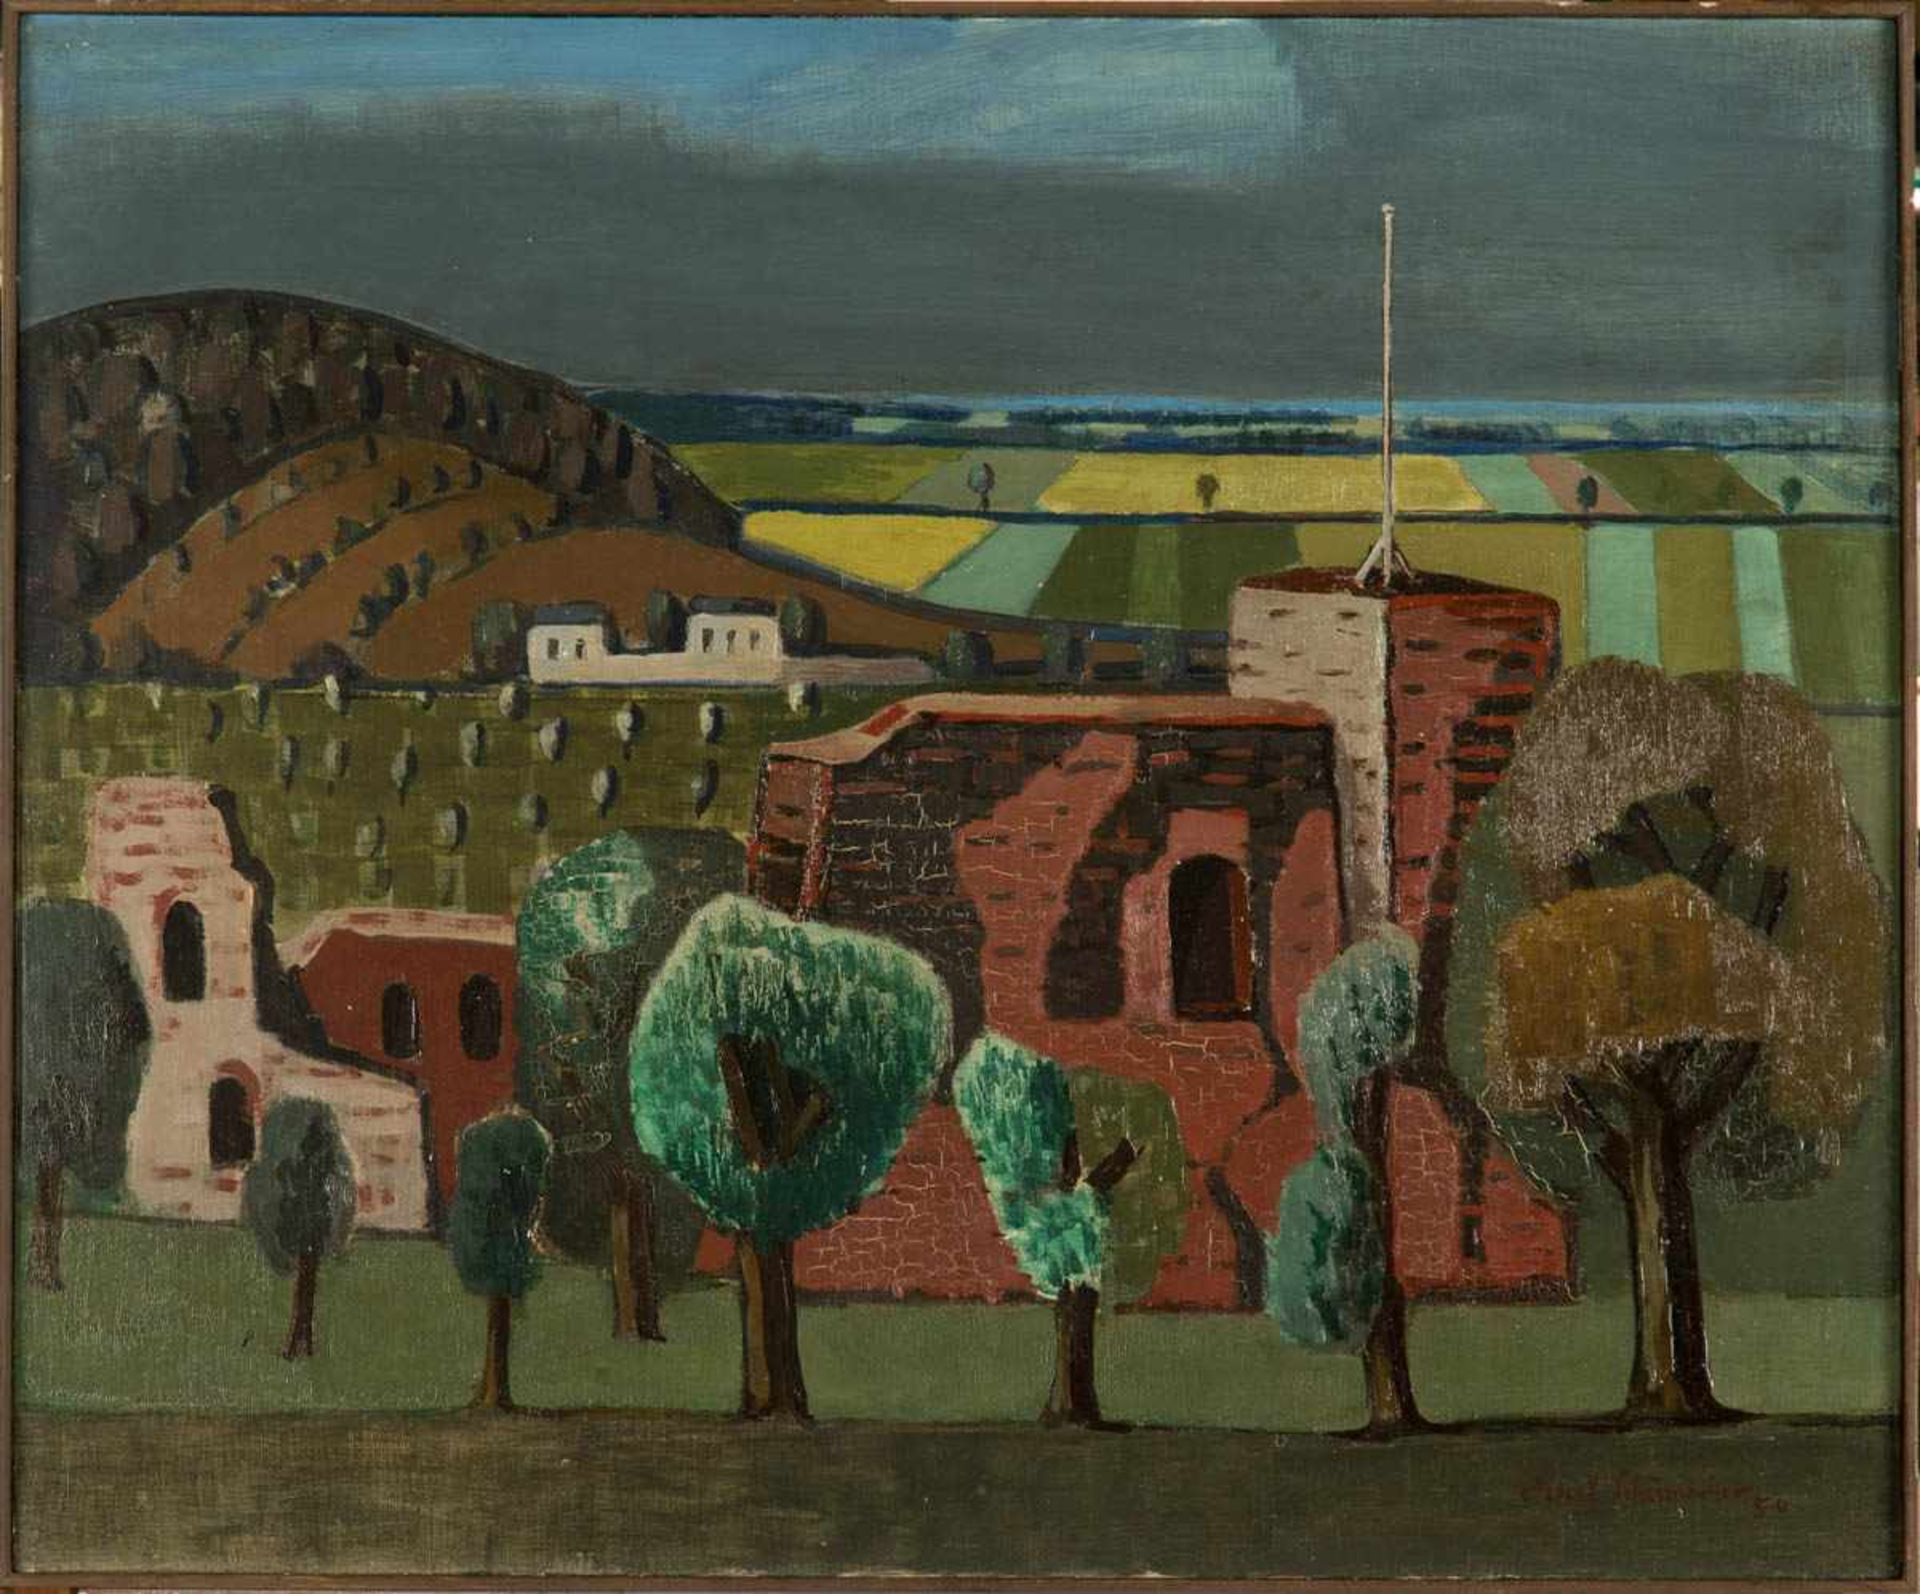 Schumacher, Ernst (Mönchengladbach 1905-1963 Berlin). Badische Landschaft, 1954, Öl auf Holz, 49 x